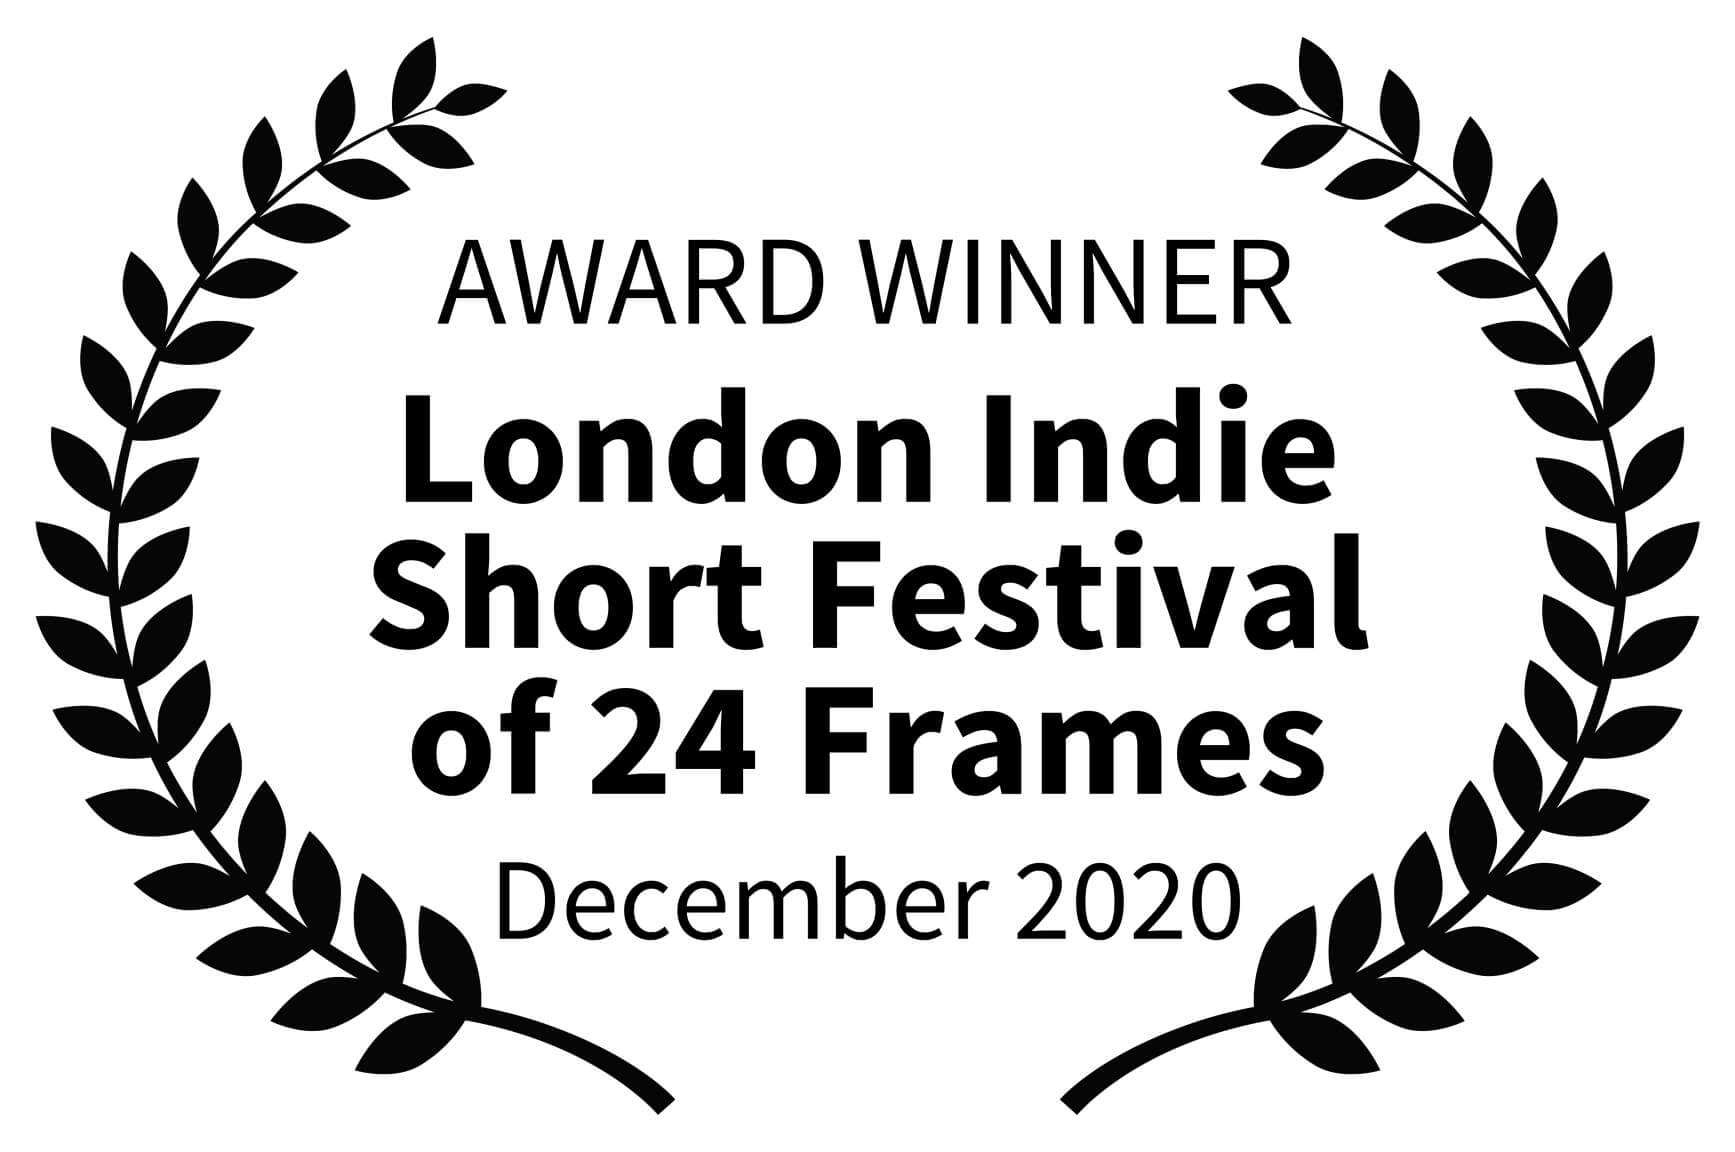 AWARD WINNER London Indie Short Festival of 24 Frames December 2020